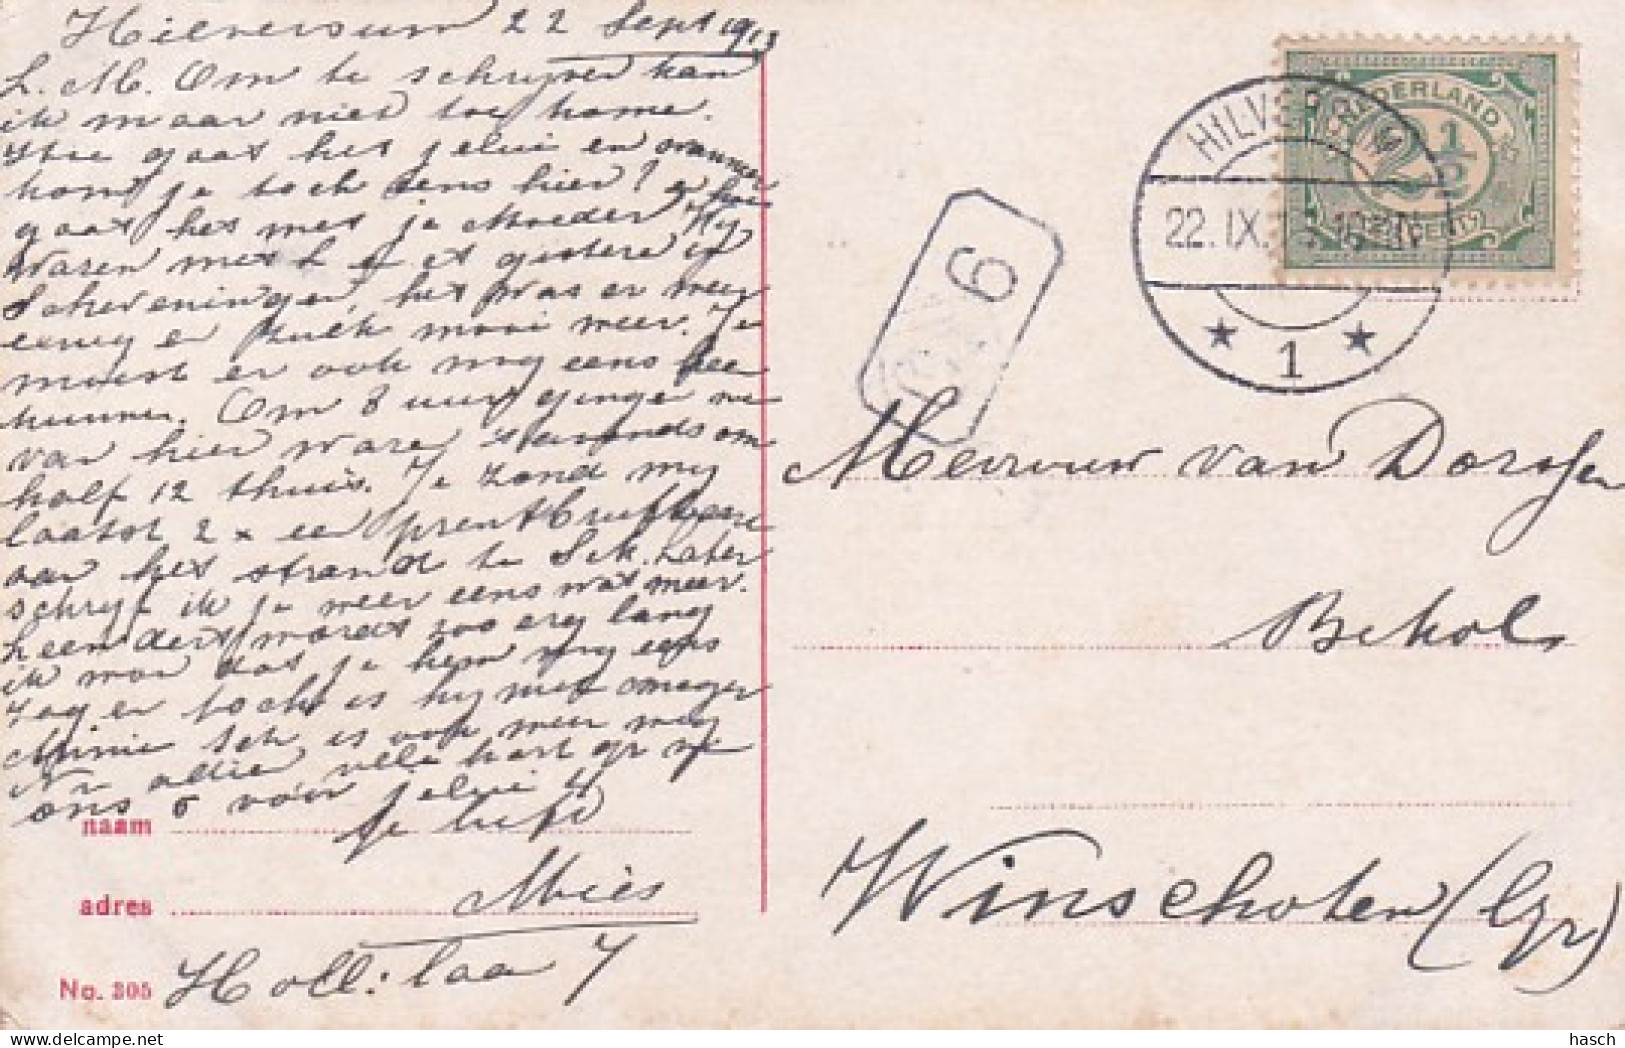 482134Hilversum, Kerkbrink Met Raadhuis Met Paardentram Lijn 3. (1913)(kleine Vouwen In De Hoeken) - Hilversum